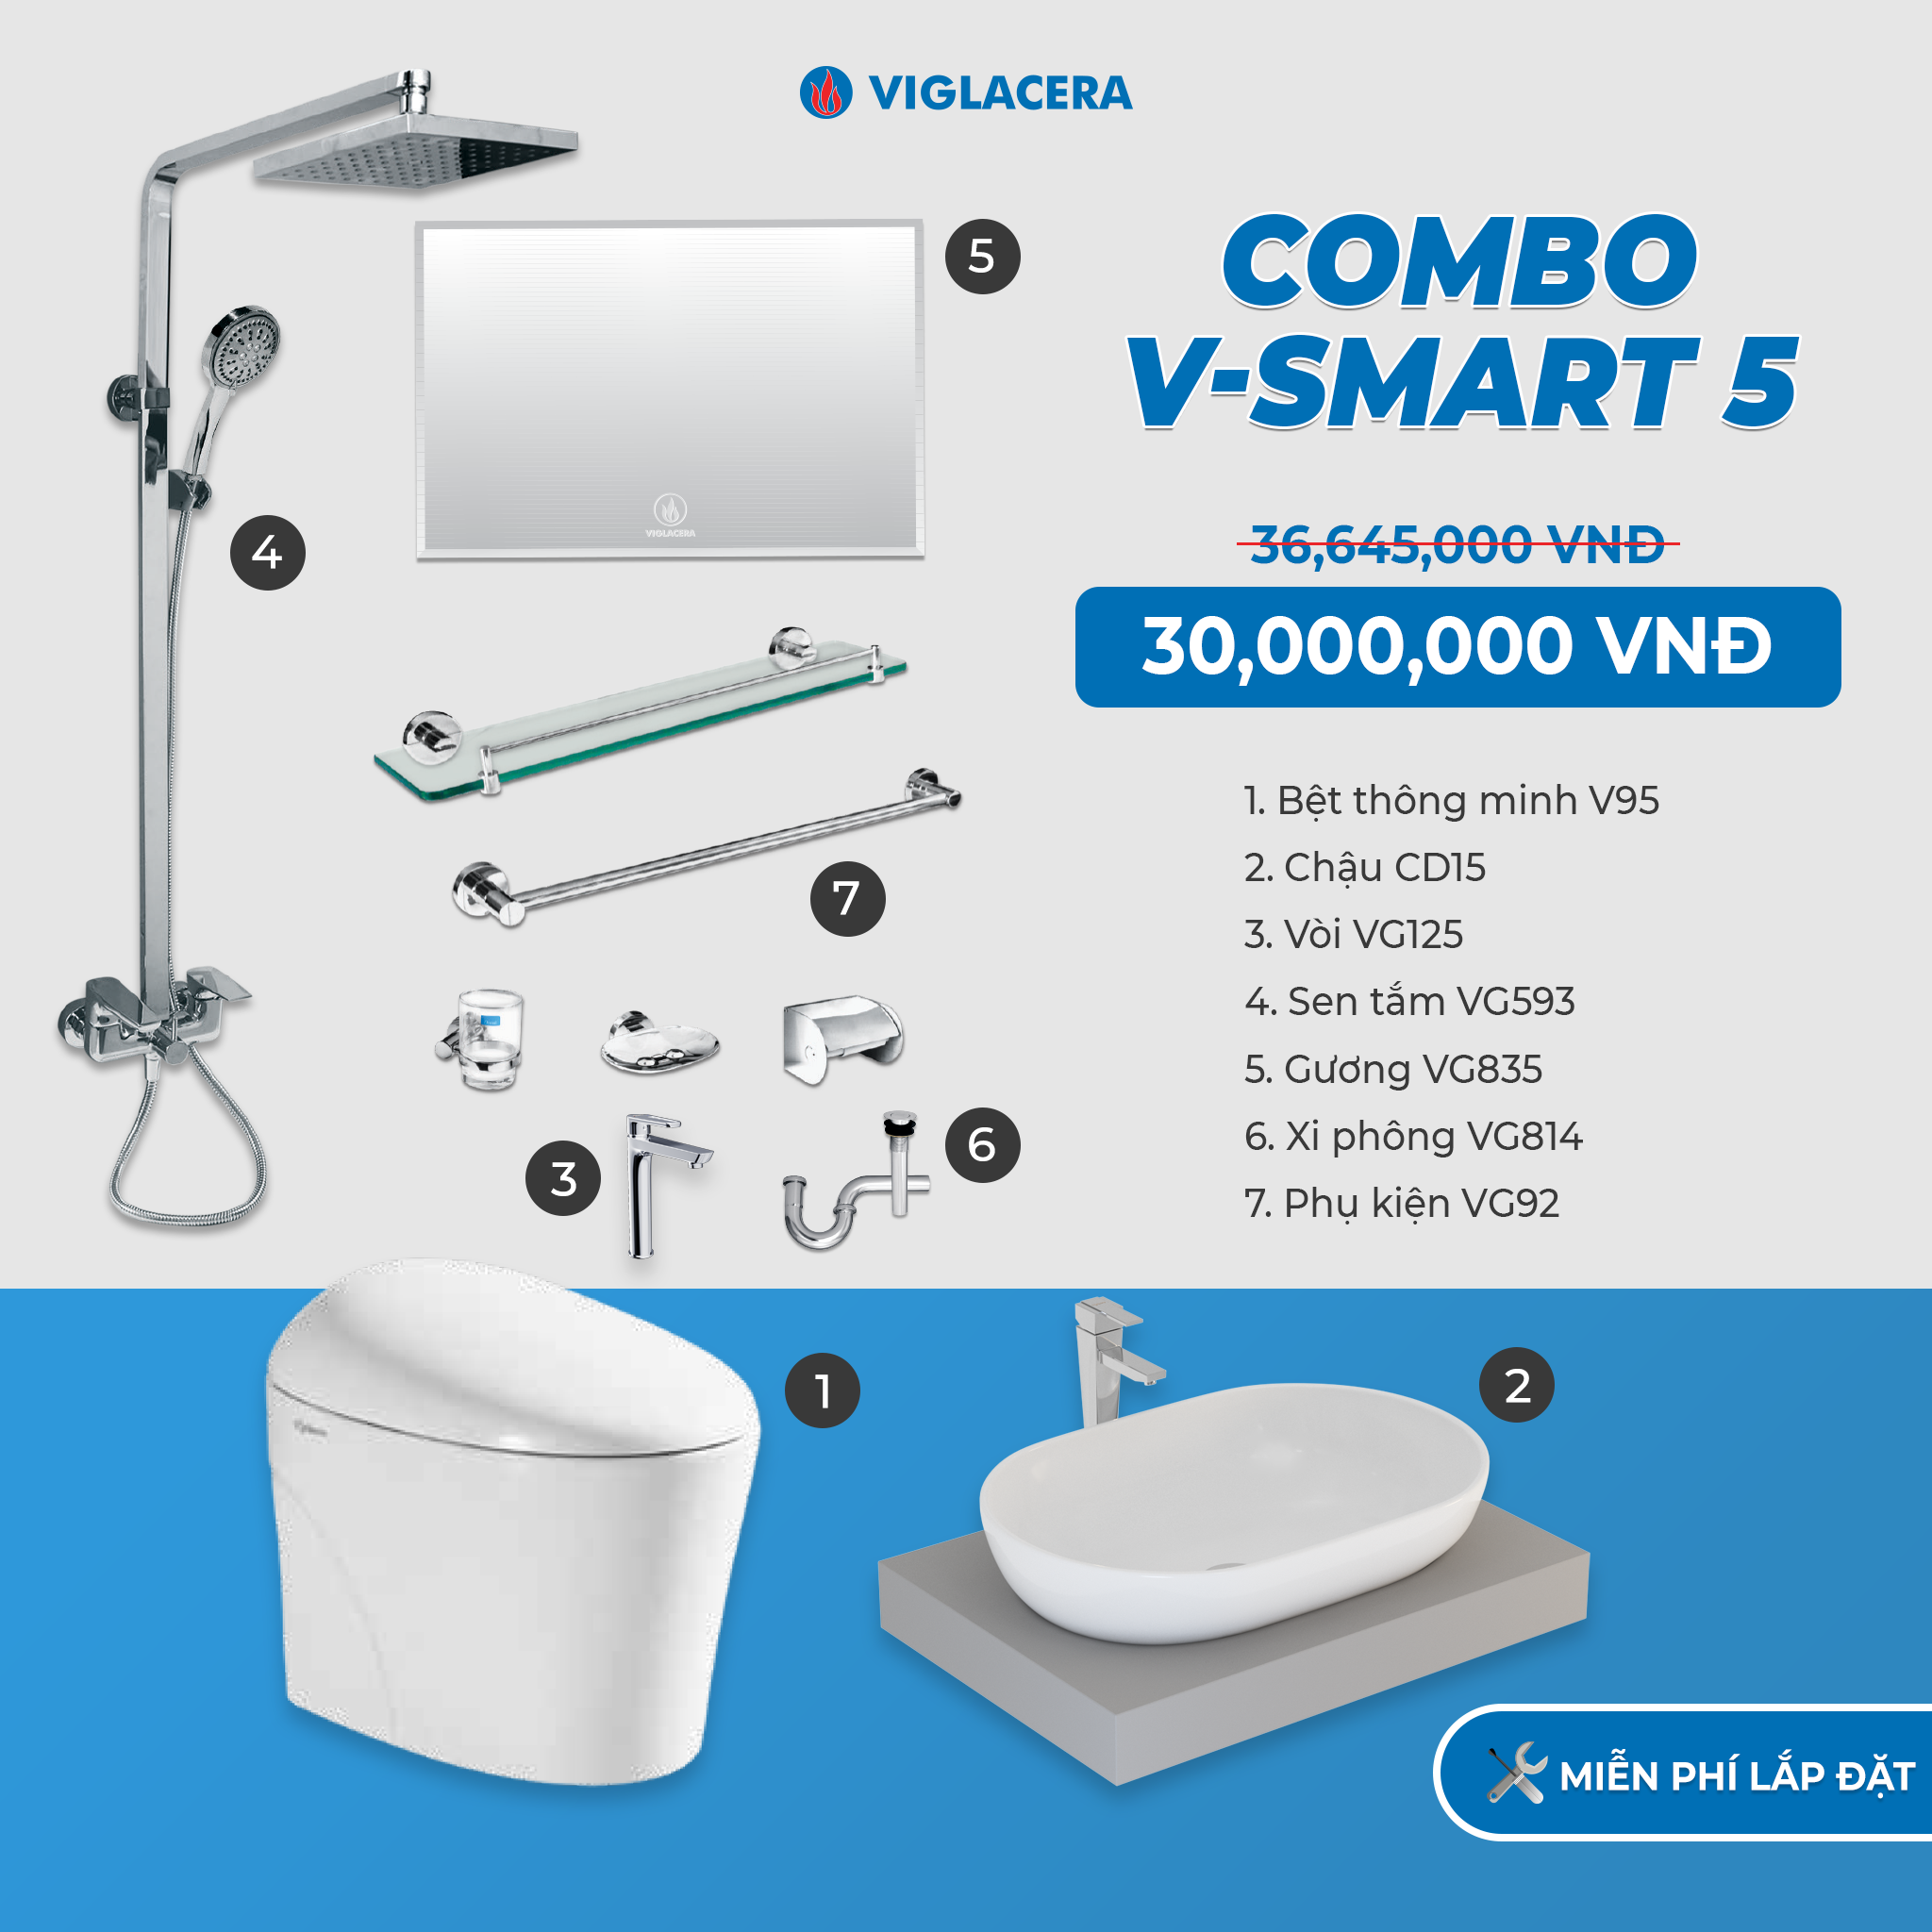 V-SMART đã công bố sản phẩm nhà tắm thông minh với các tính năng đa dạng, tiện lợi và thân thiện với môi trường. Các thiết bị này đi kèm với khả năng kết nối Wi-Fi và bảo mật tối đa cho người dùng.